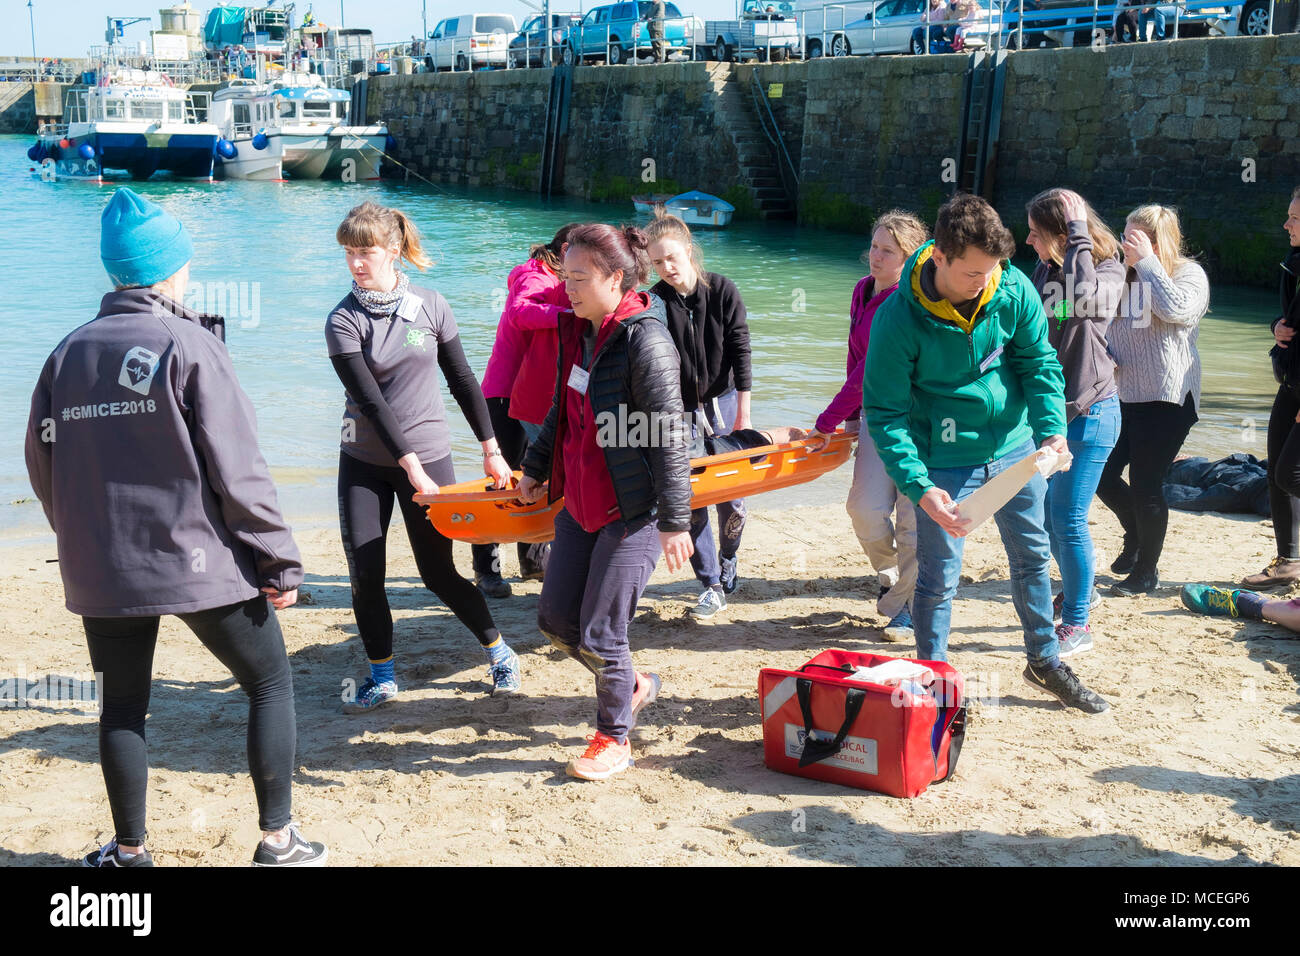 Freiwillige in einem GMICE (Gute Medizin in anspruchsvollen Umgebungen) Major Incident Übung im Hafen von Newquay in Cornwall teilnehmen. Stockfoto